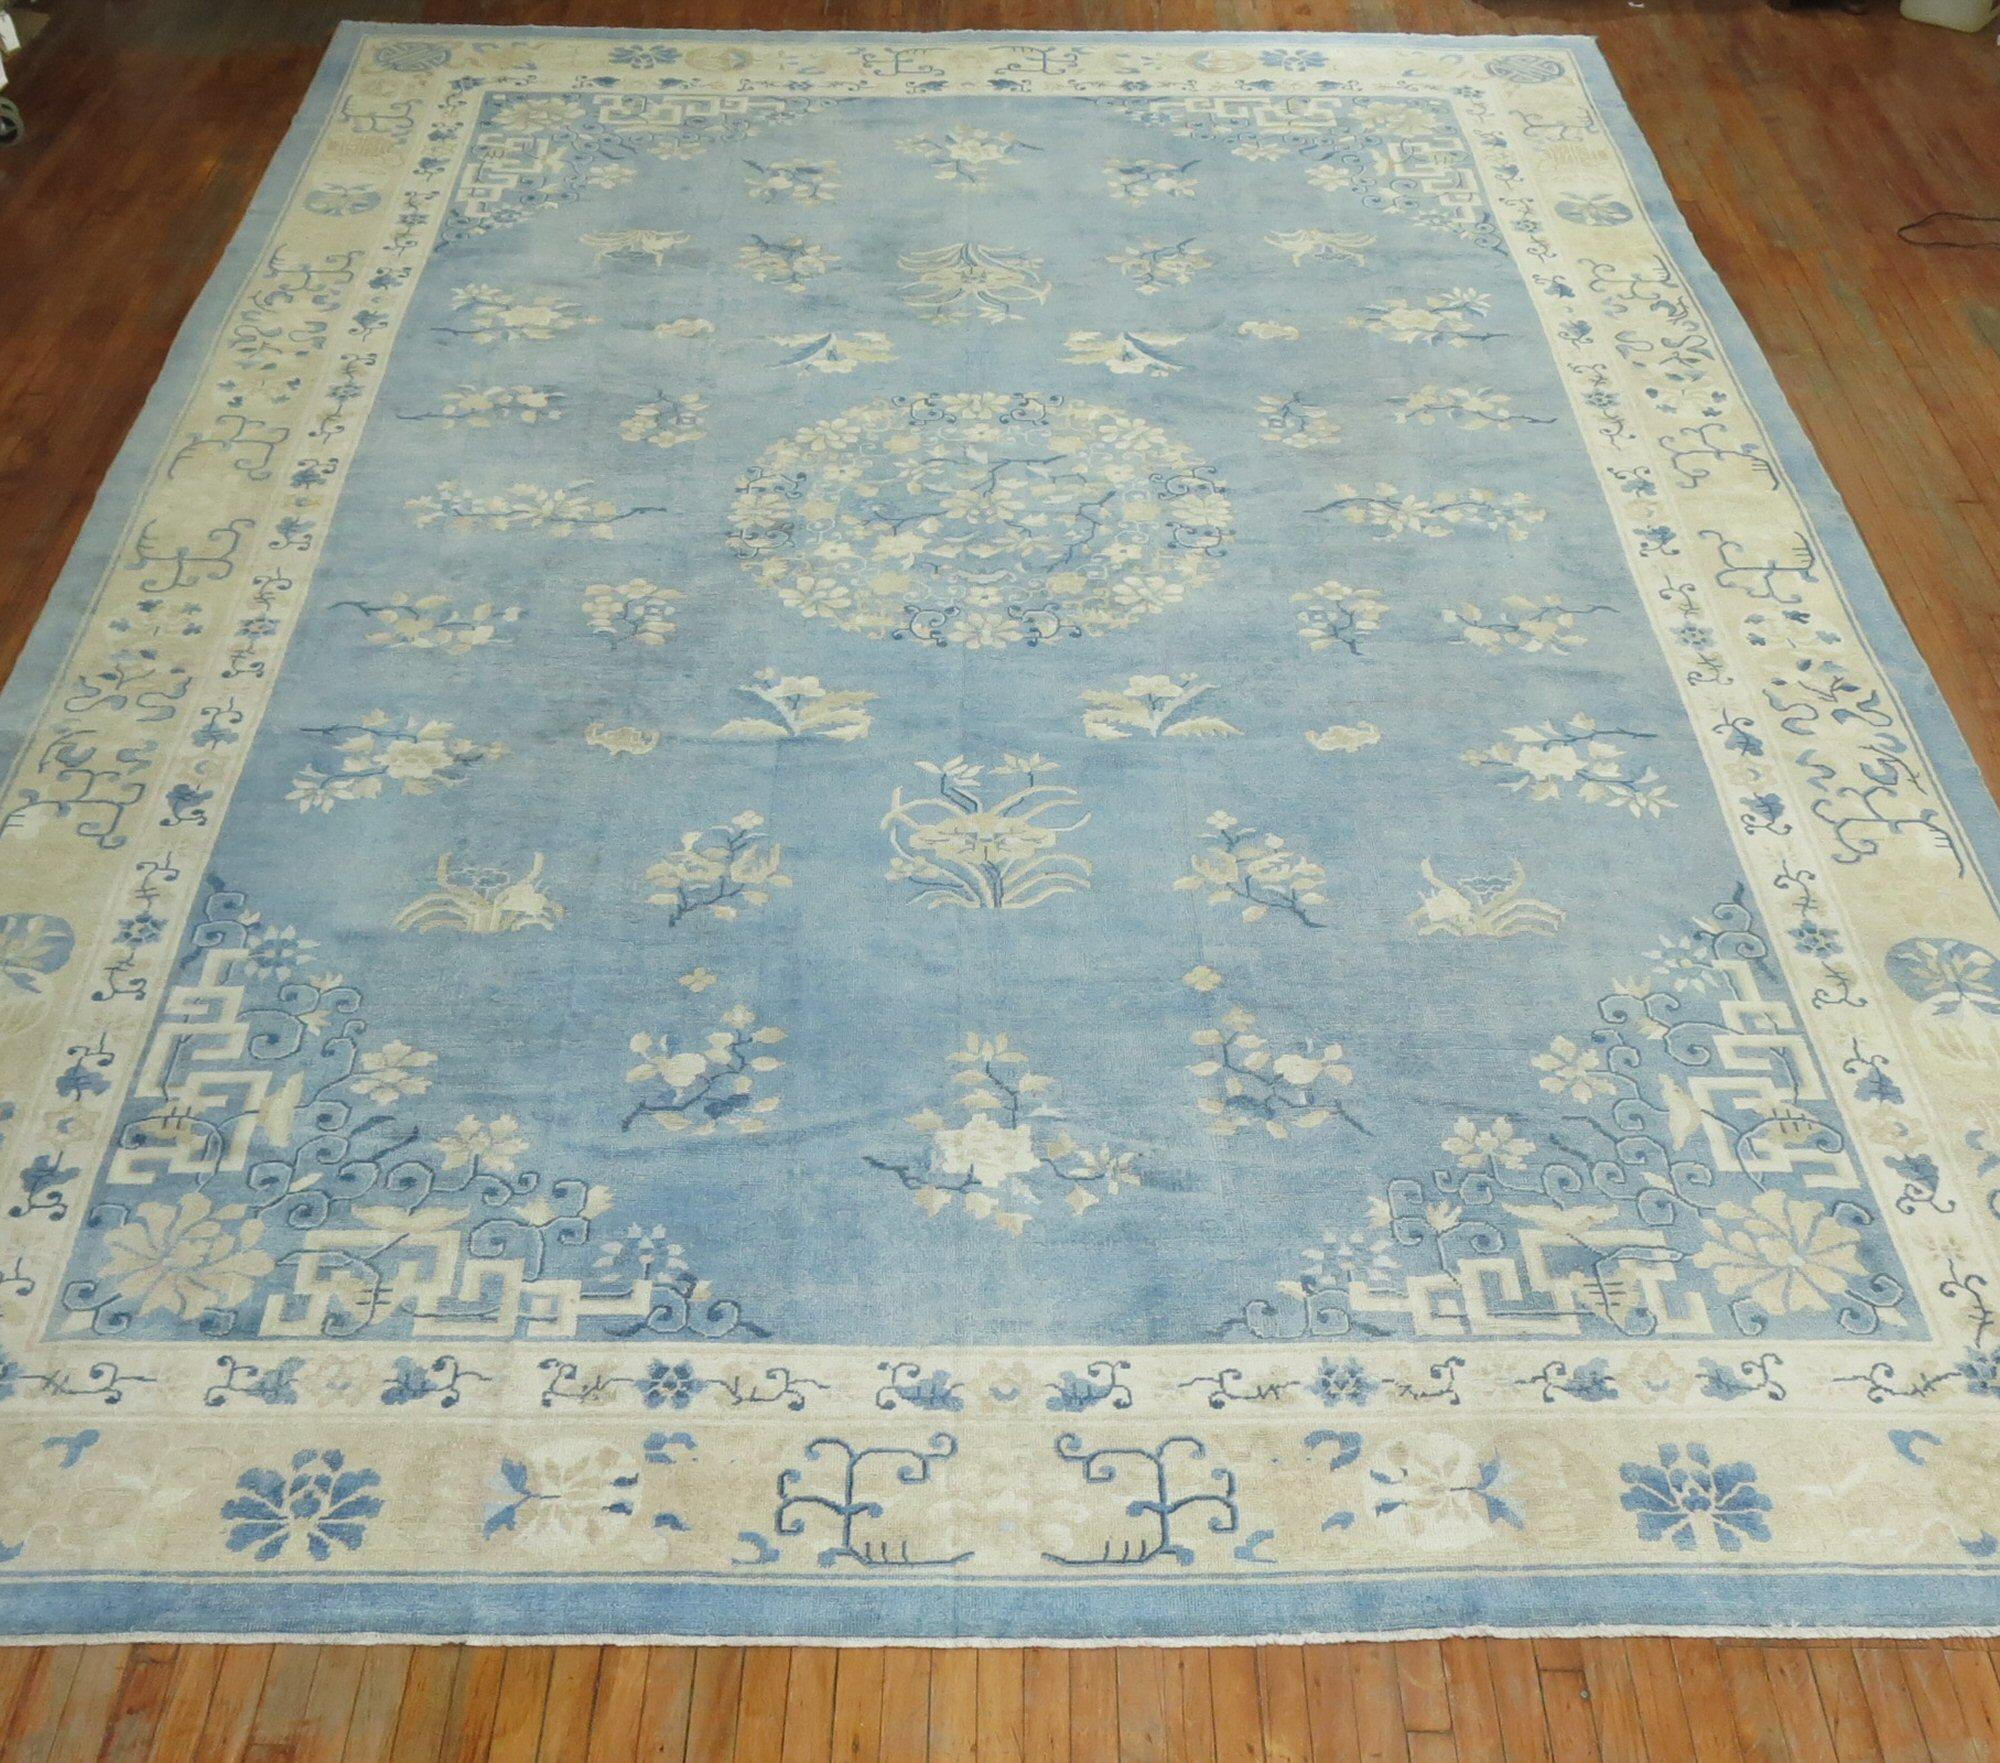 Ein übergroßer chinesischer Teppich aus dem frühen 20. Jahrhundert in verschiedenen vorherrschenden Hellblau- und Cremetönen. Die Wolle und die Haptik des Teppichs sind sehr weich an den Füßen. Außerdem hat es einen seidigen Glanz. Wolle auf